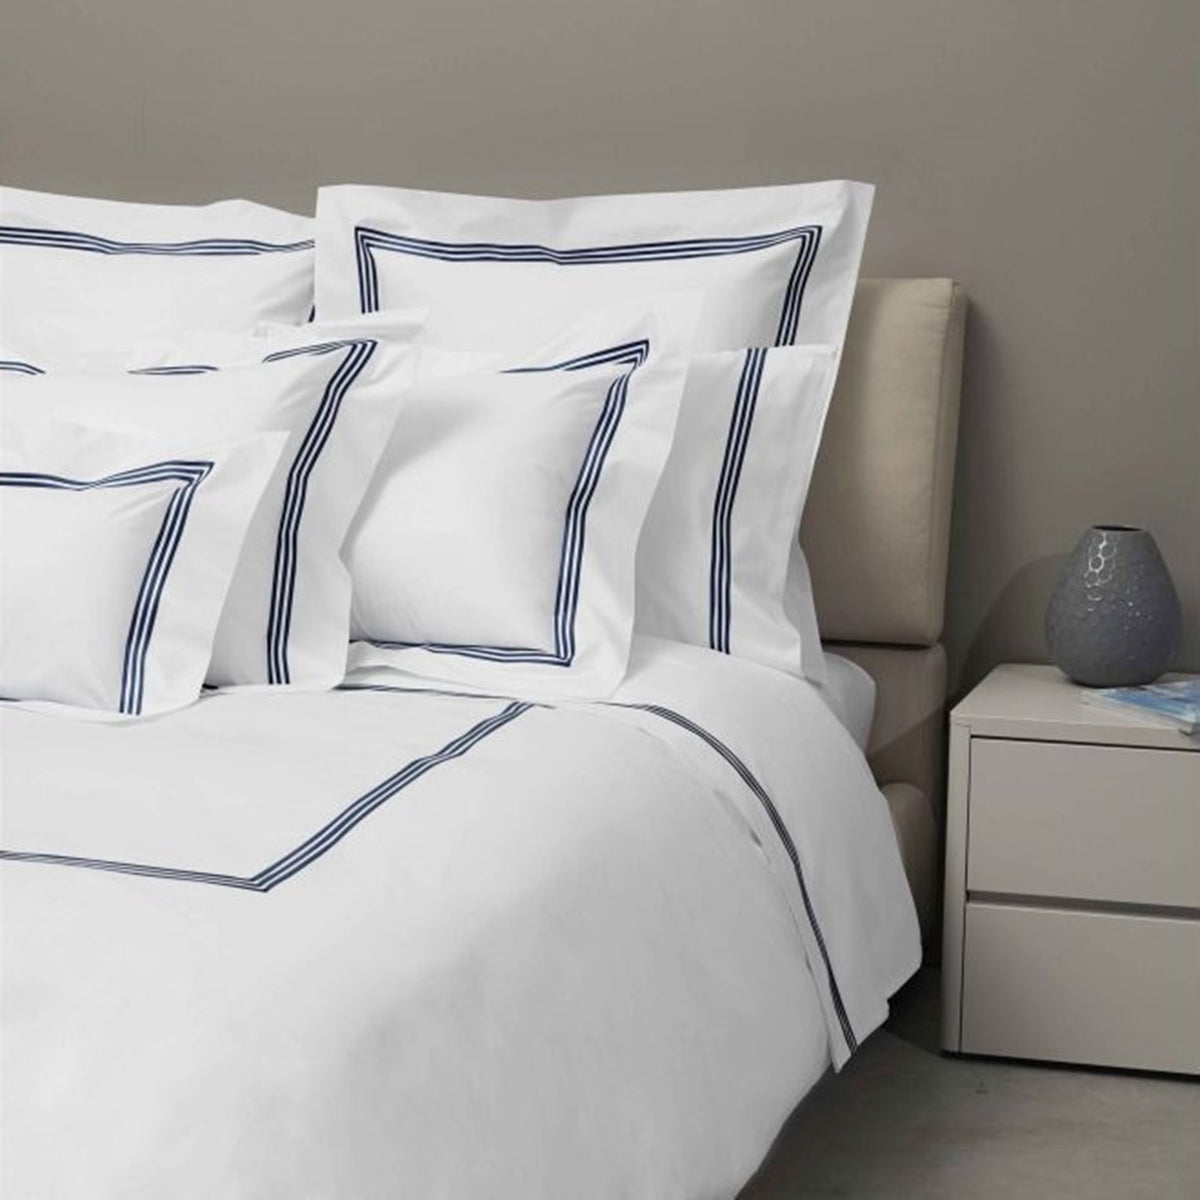 Bed Dressed in Signoria Platinum Percale Bedding in White/Dark Blue Color